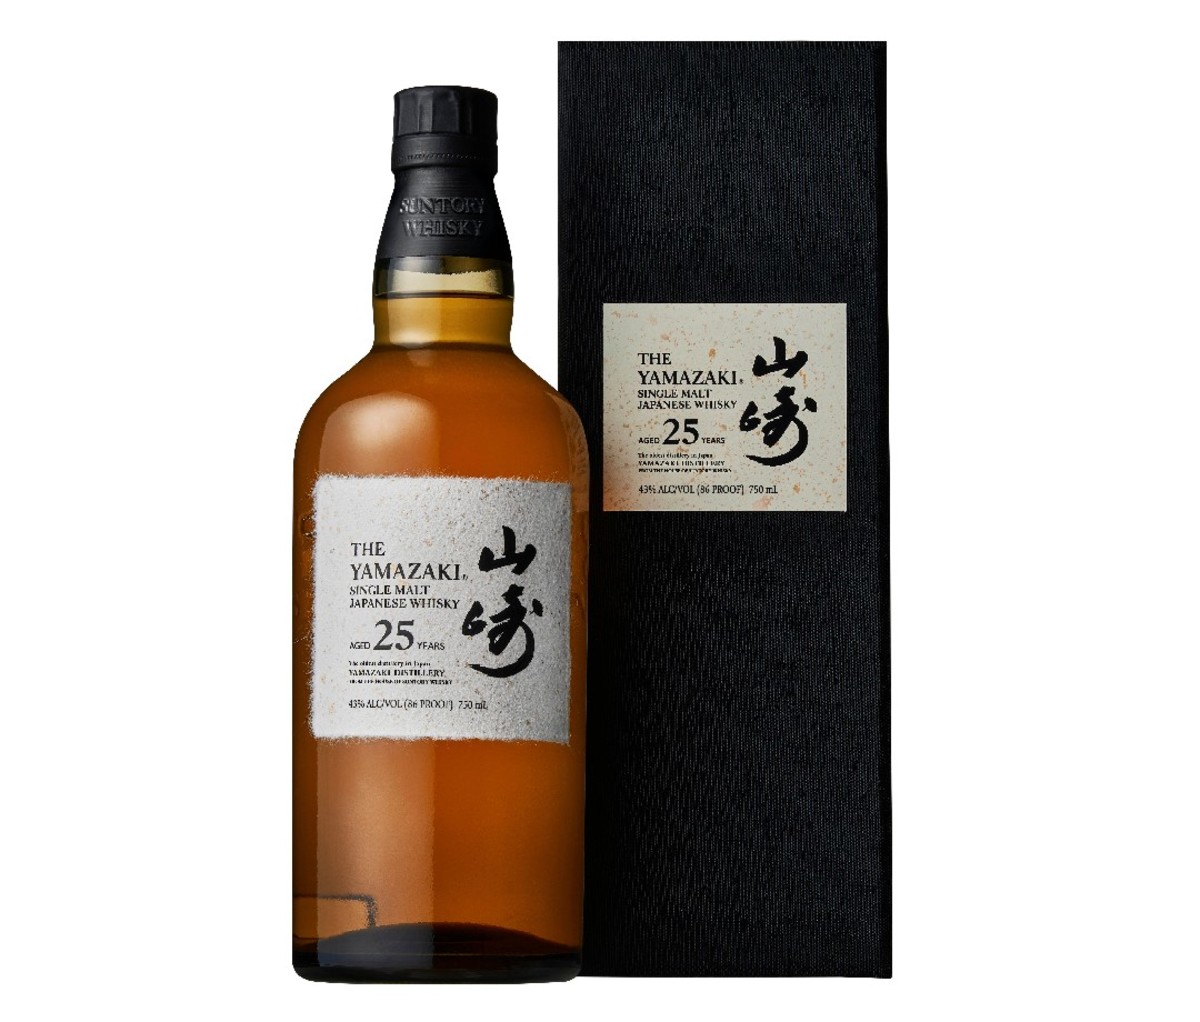 Bottle of Yamazaki 25-Year-Old Japanese whisky